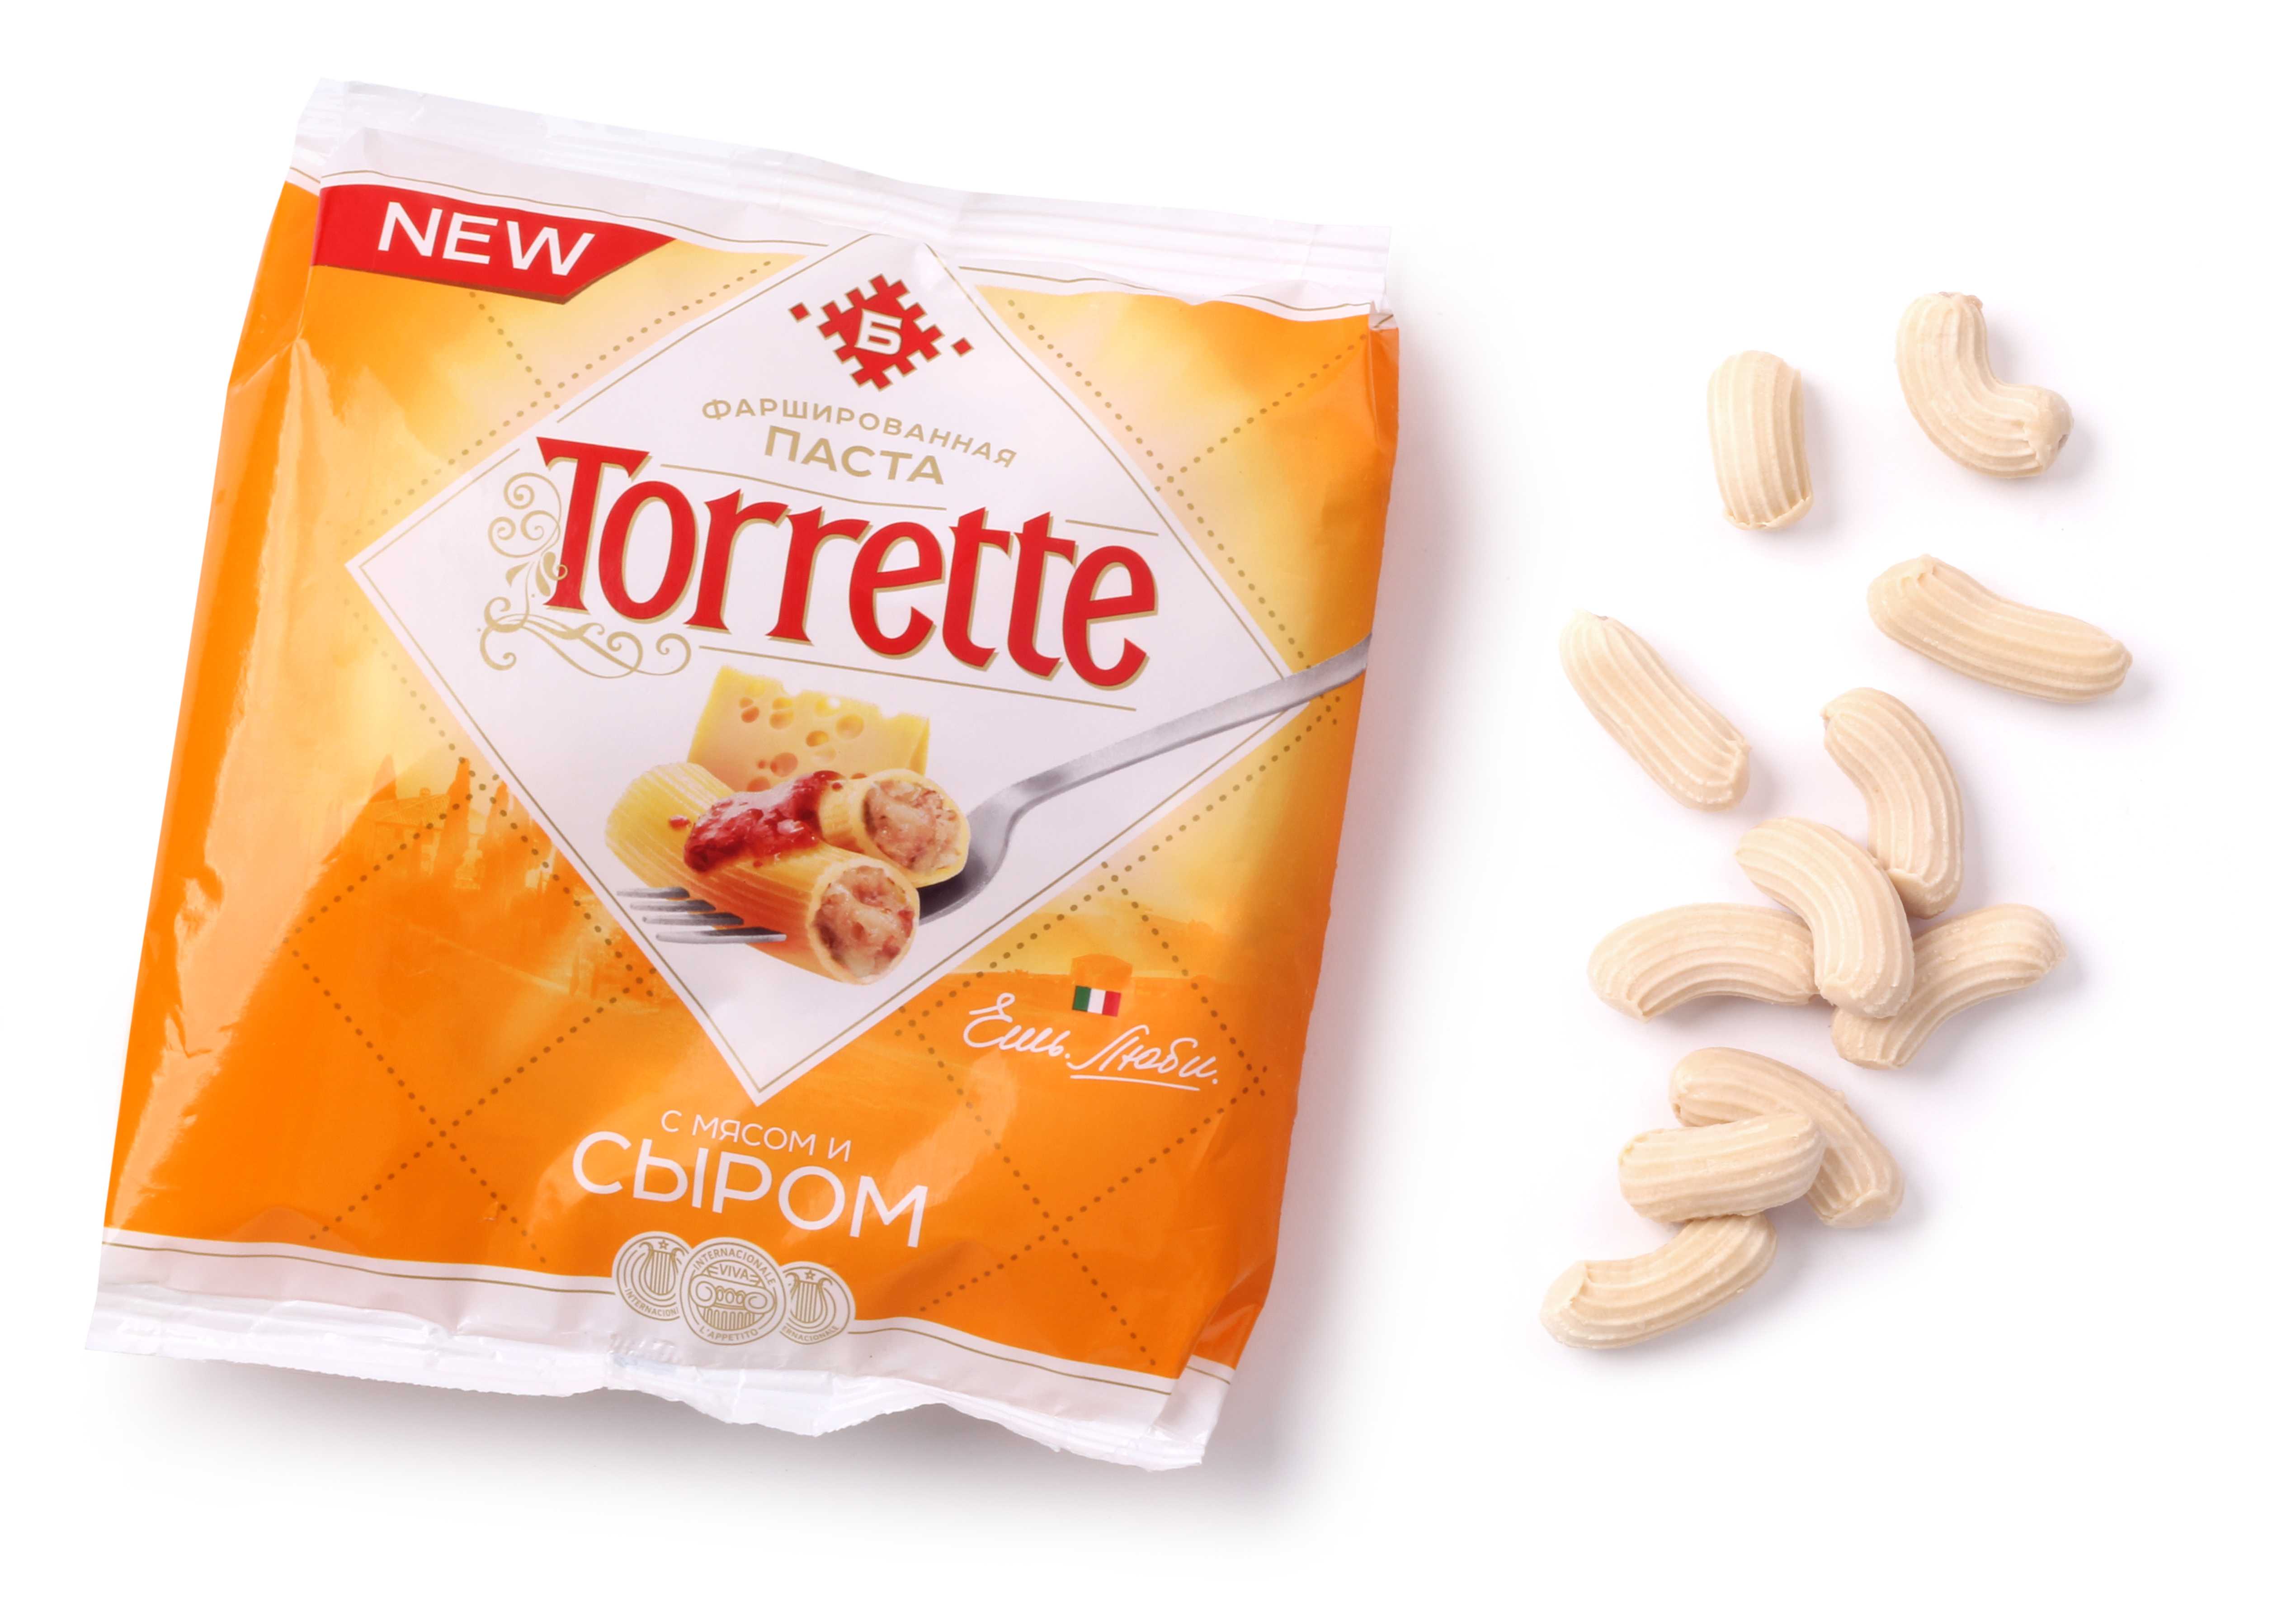 Torretto с мясом и сыром | Интернет-магазин Gostpp